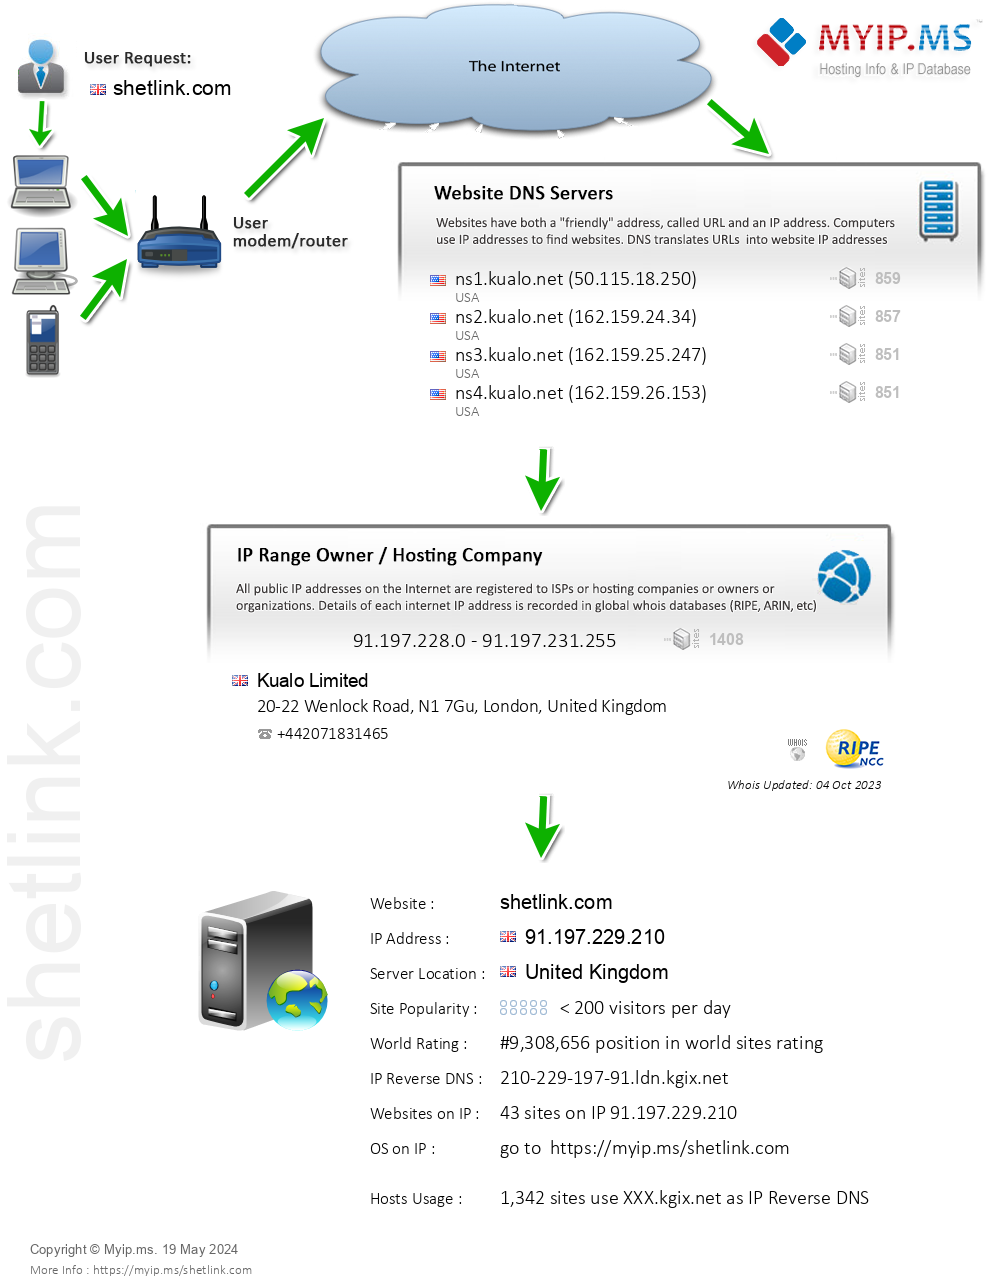 Shetlink.com - Website Hosting Visual IP Diagram